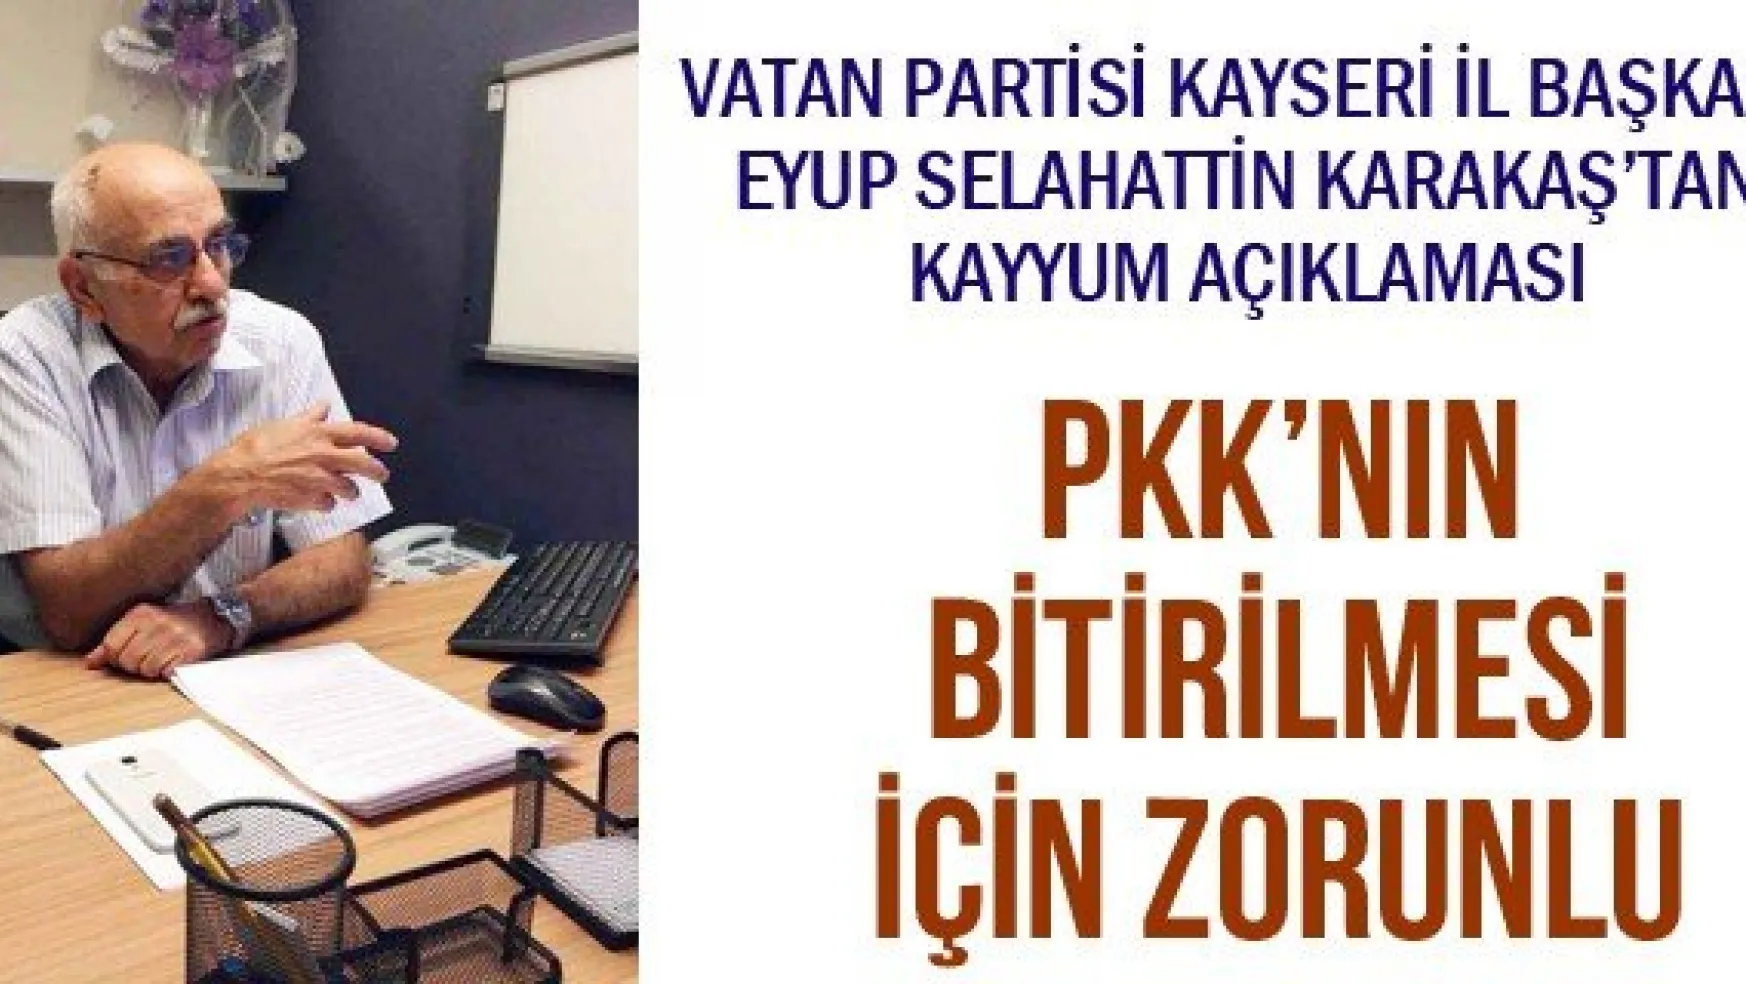 PKK'NIN BİTİRİLMESİ İÇİN ZORUNLU